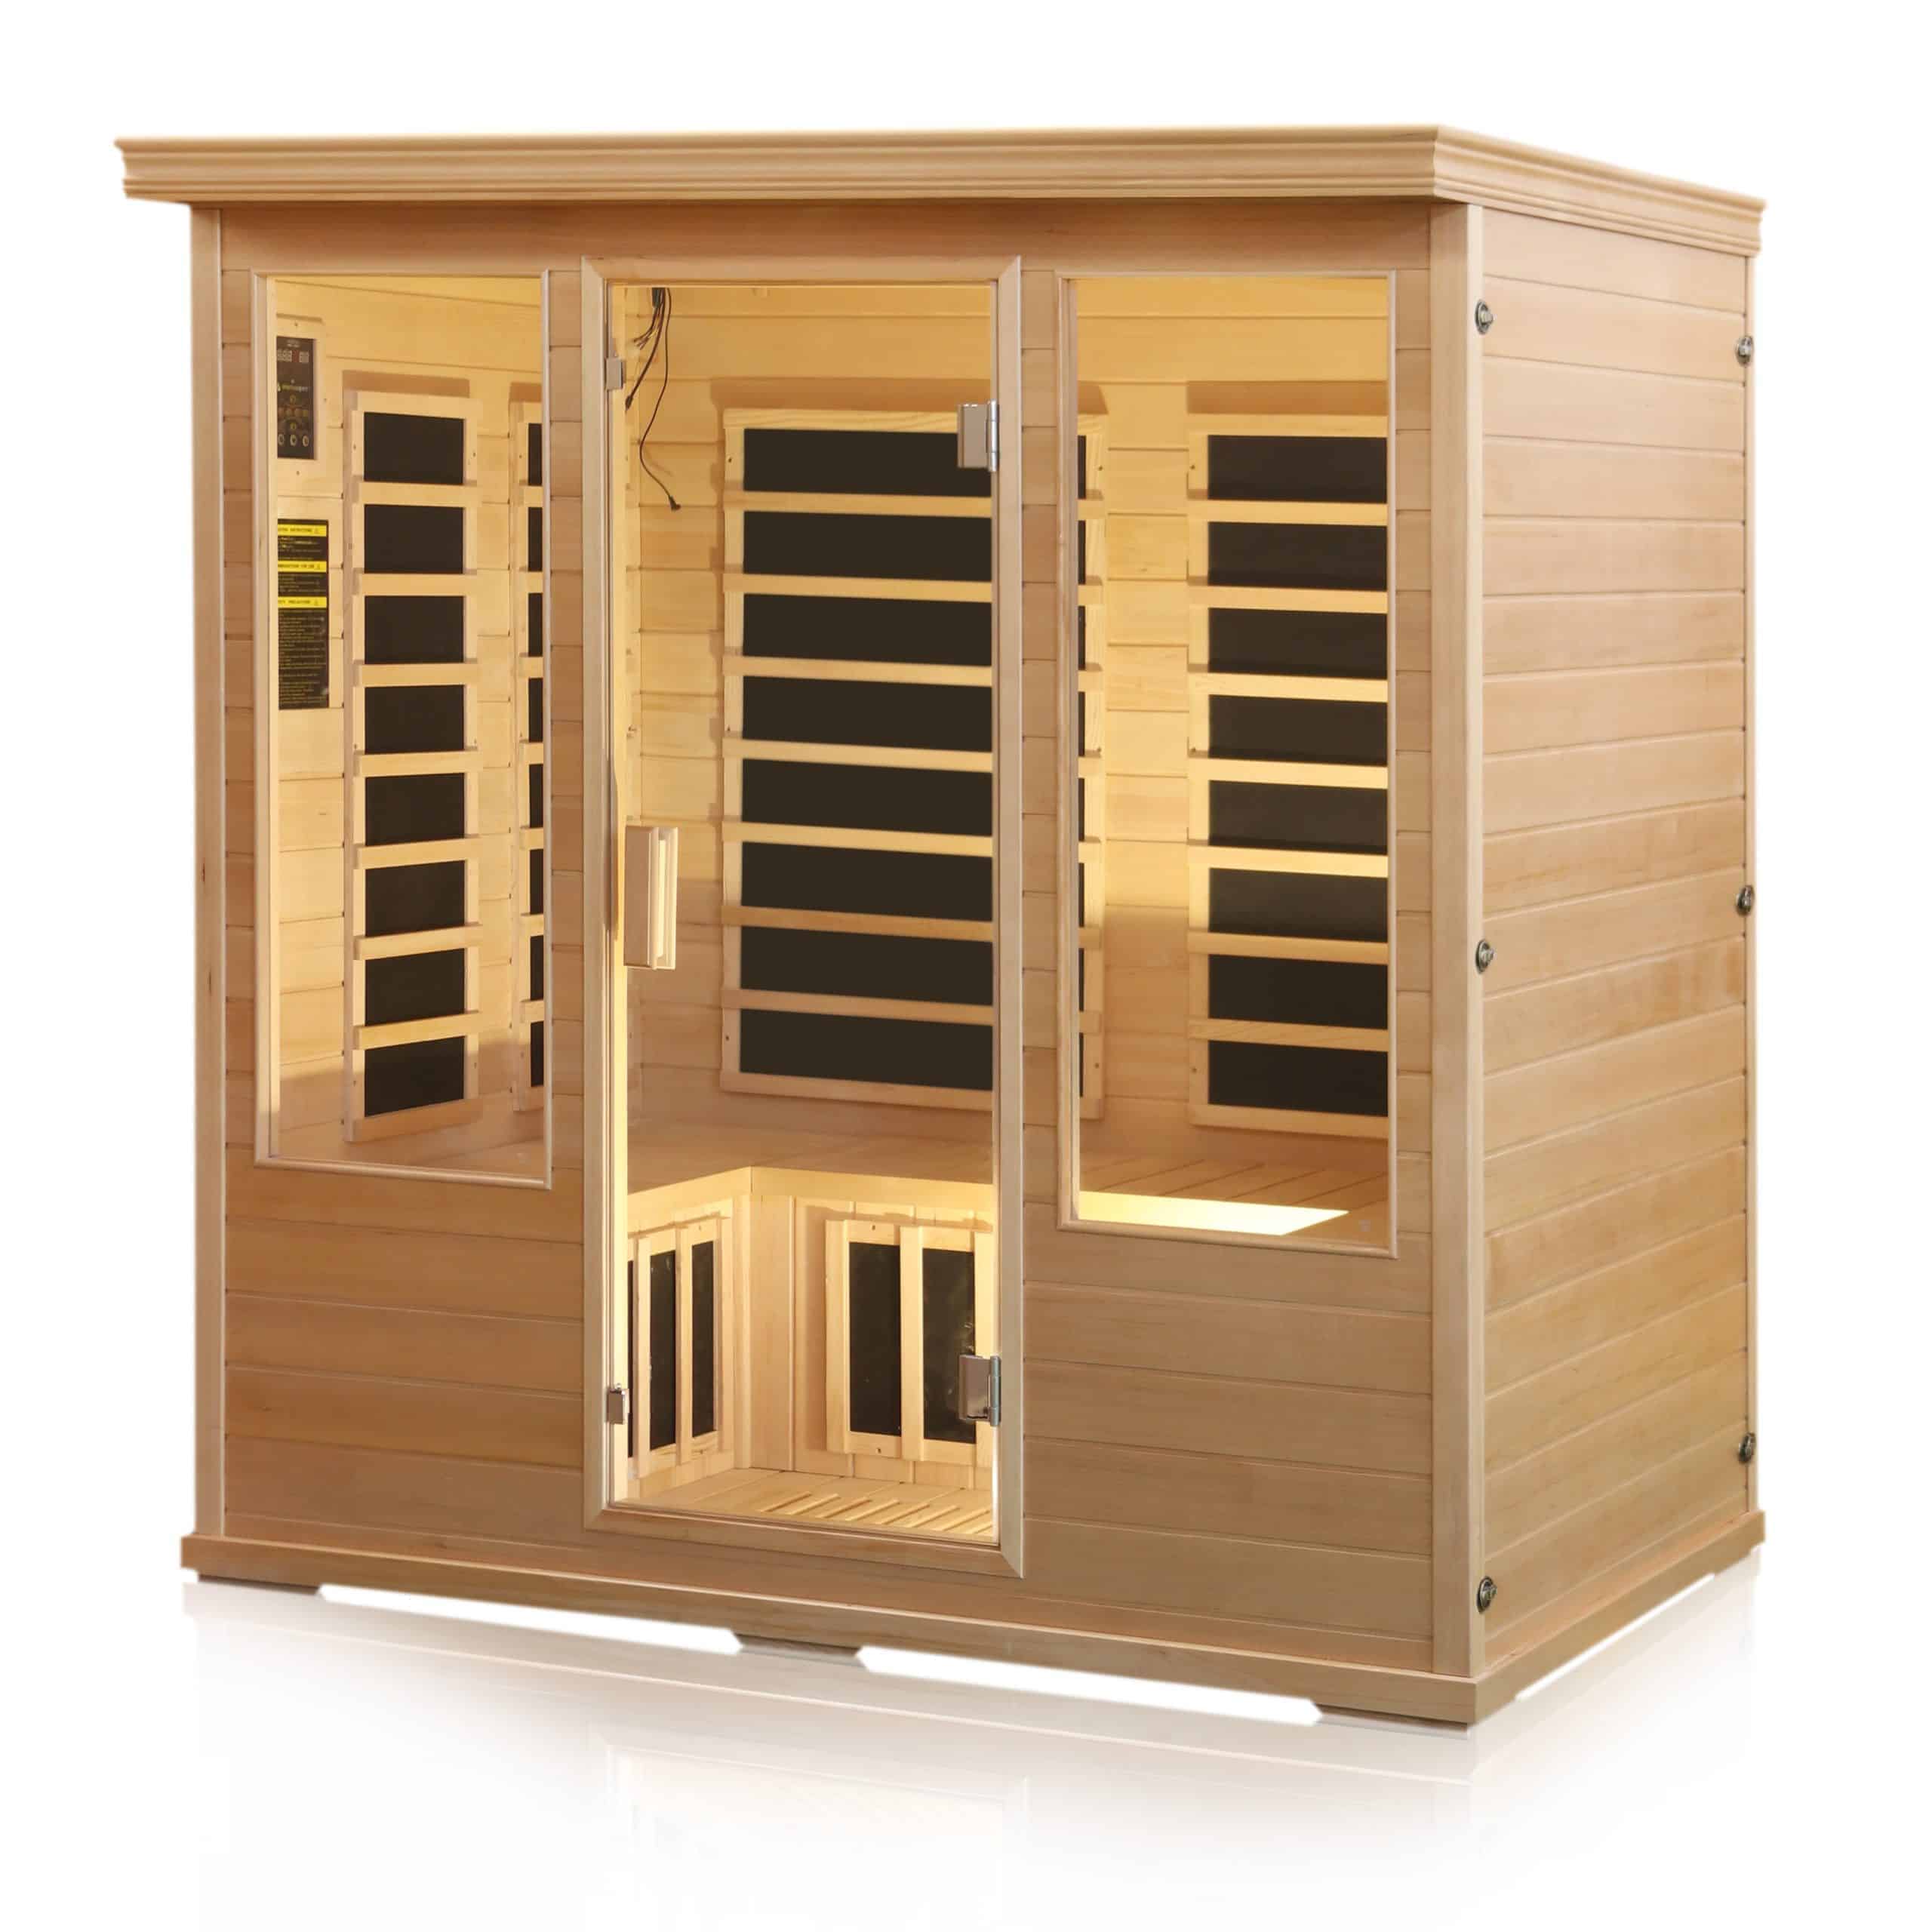 Single infrared sauna